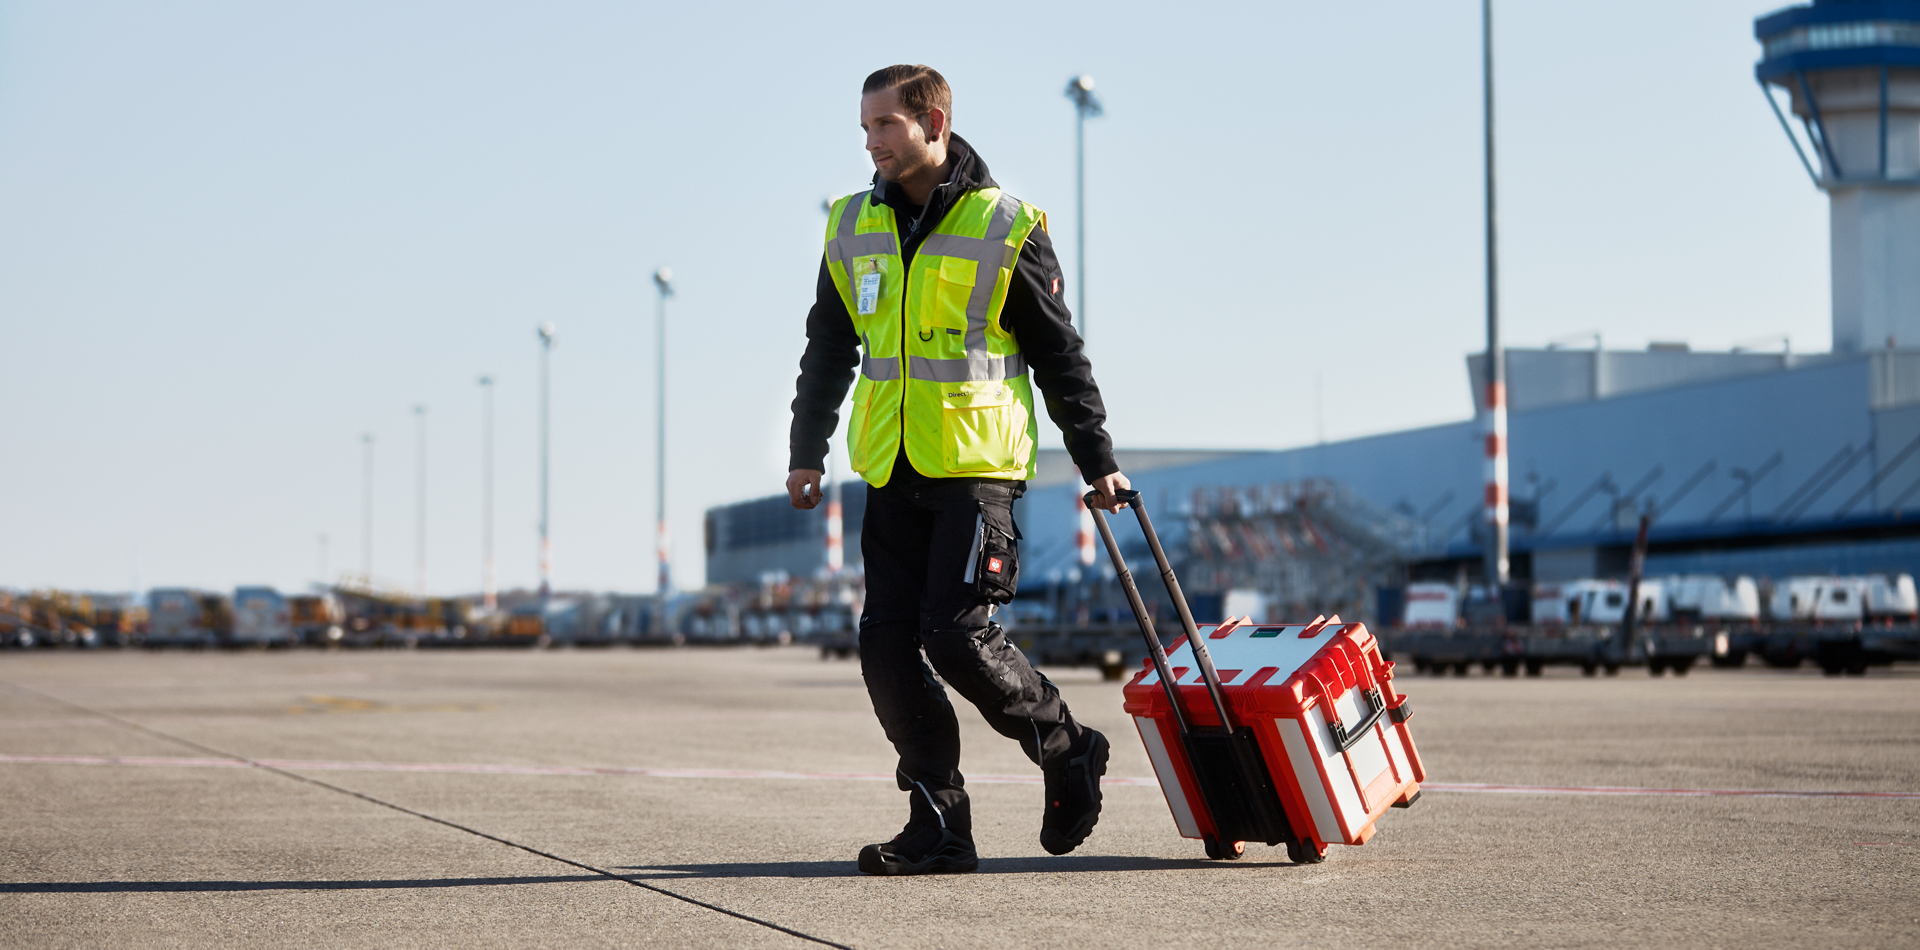 Mobiler Werkzeugkoffer von STAHLWILLE wird über einen Flugplatz transportiert